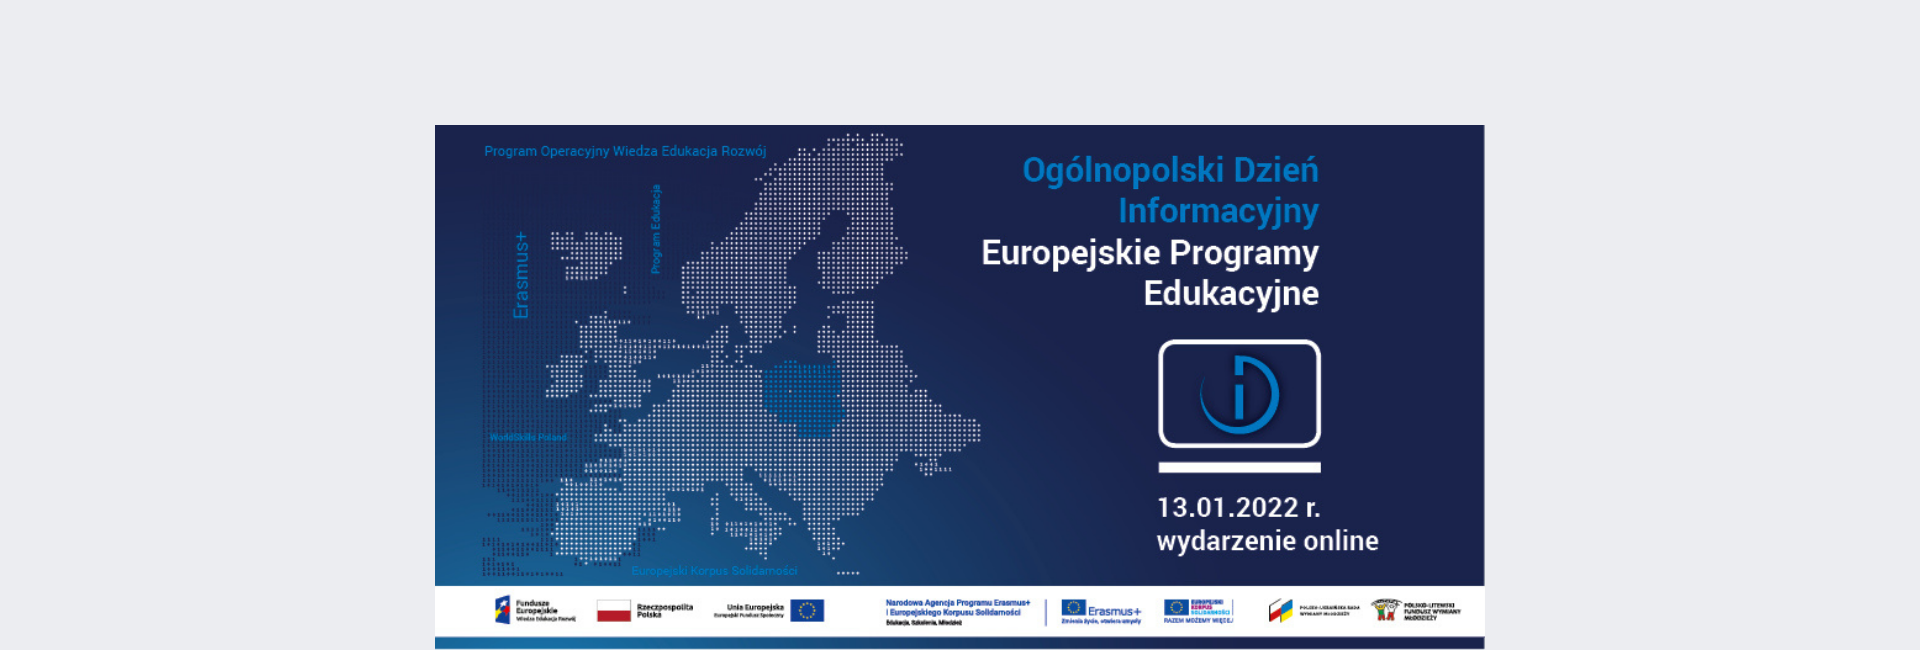 Ogólnopolski Dzień Informacyjny - Europejskie Programy Edukacyjne 13 stycznia 2022